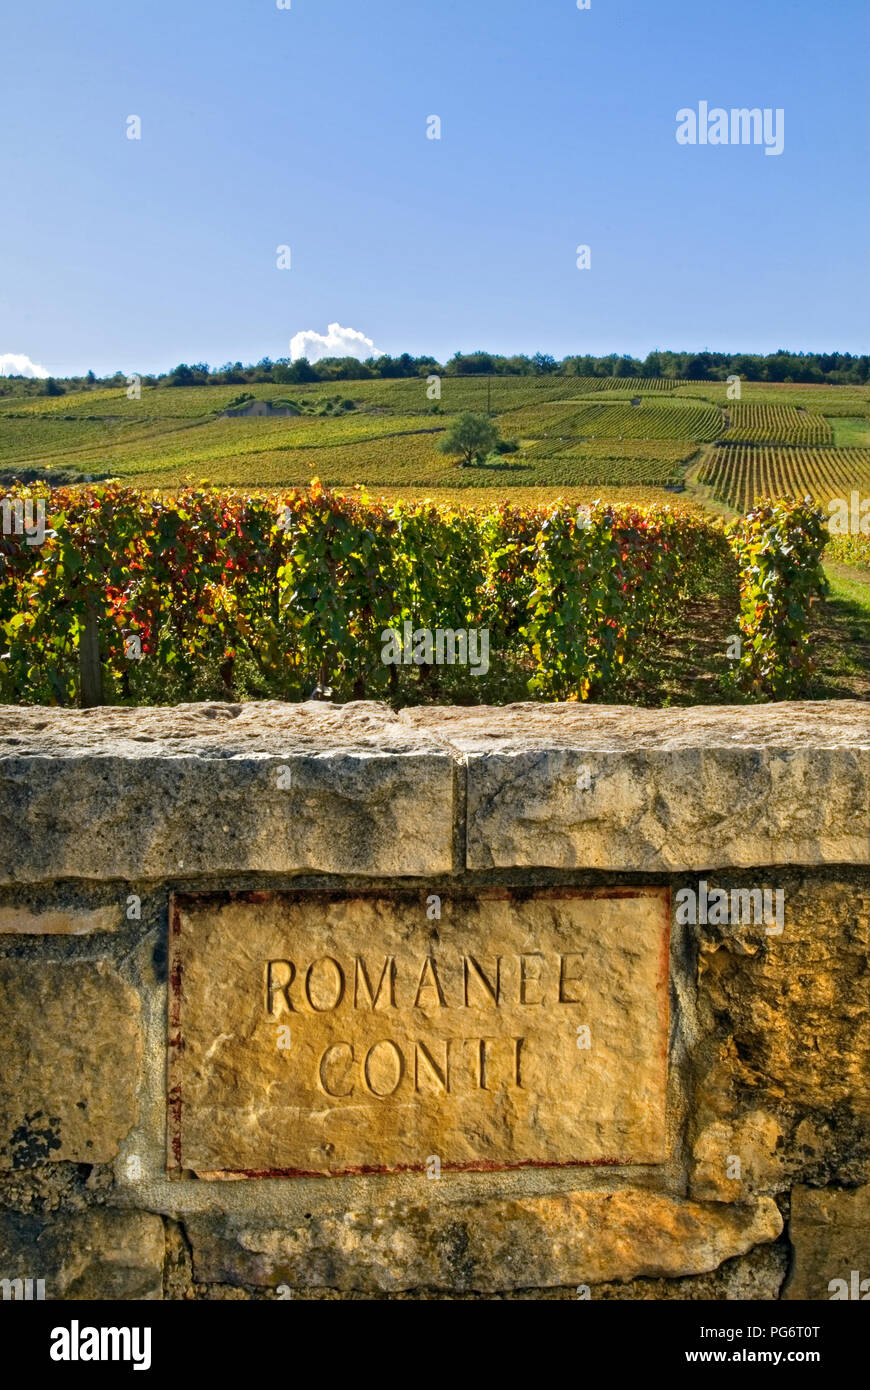 Romanée Conti Vignoble pierre gravée plaque dans mur de RDC historique Domaine de la Romanée-conti Richebourg Bourgogne Côte d'Or France Banque D'Images